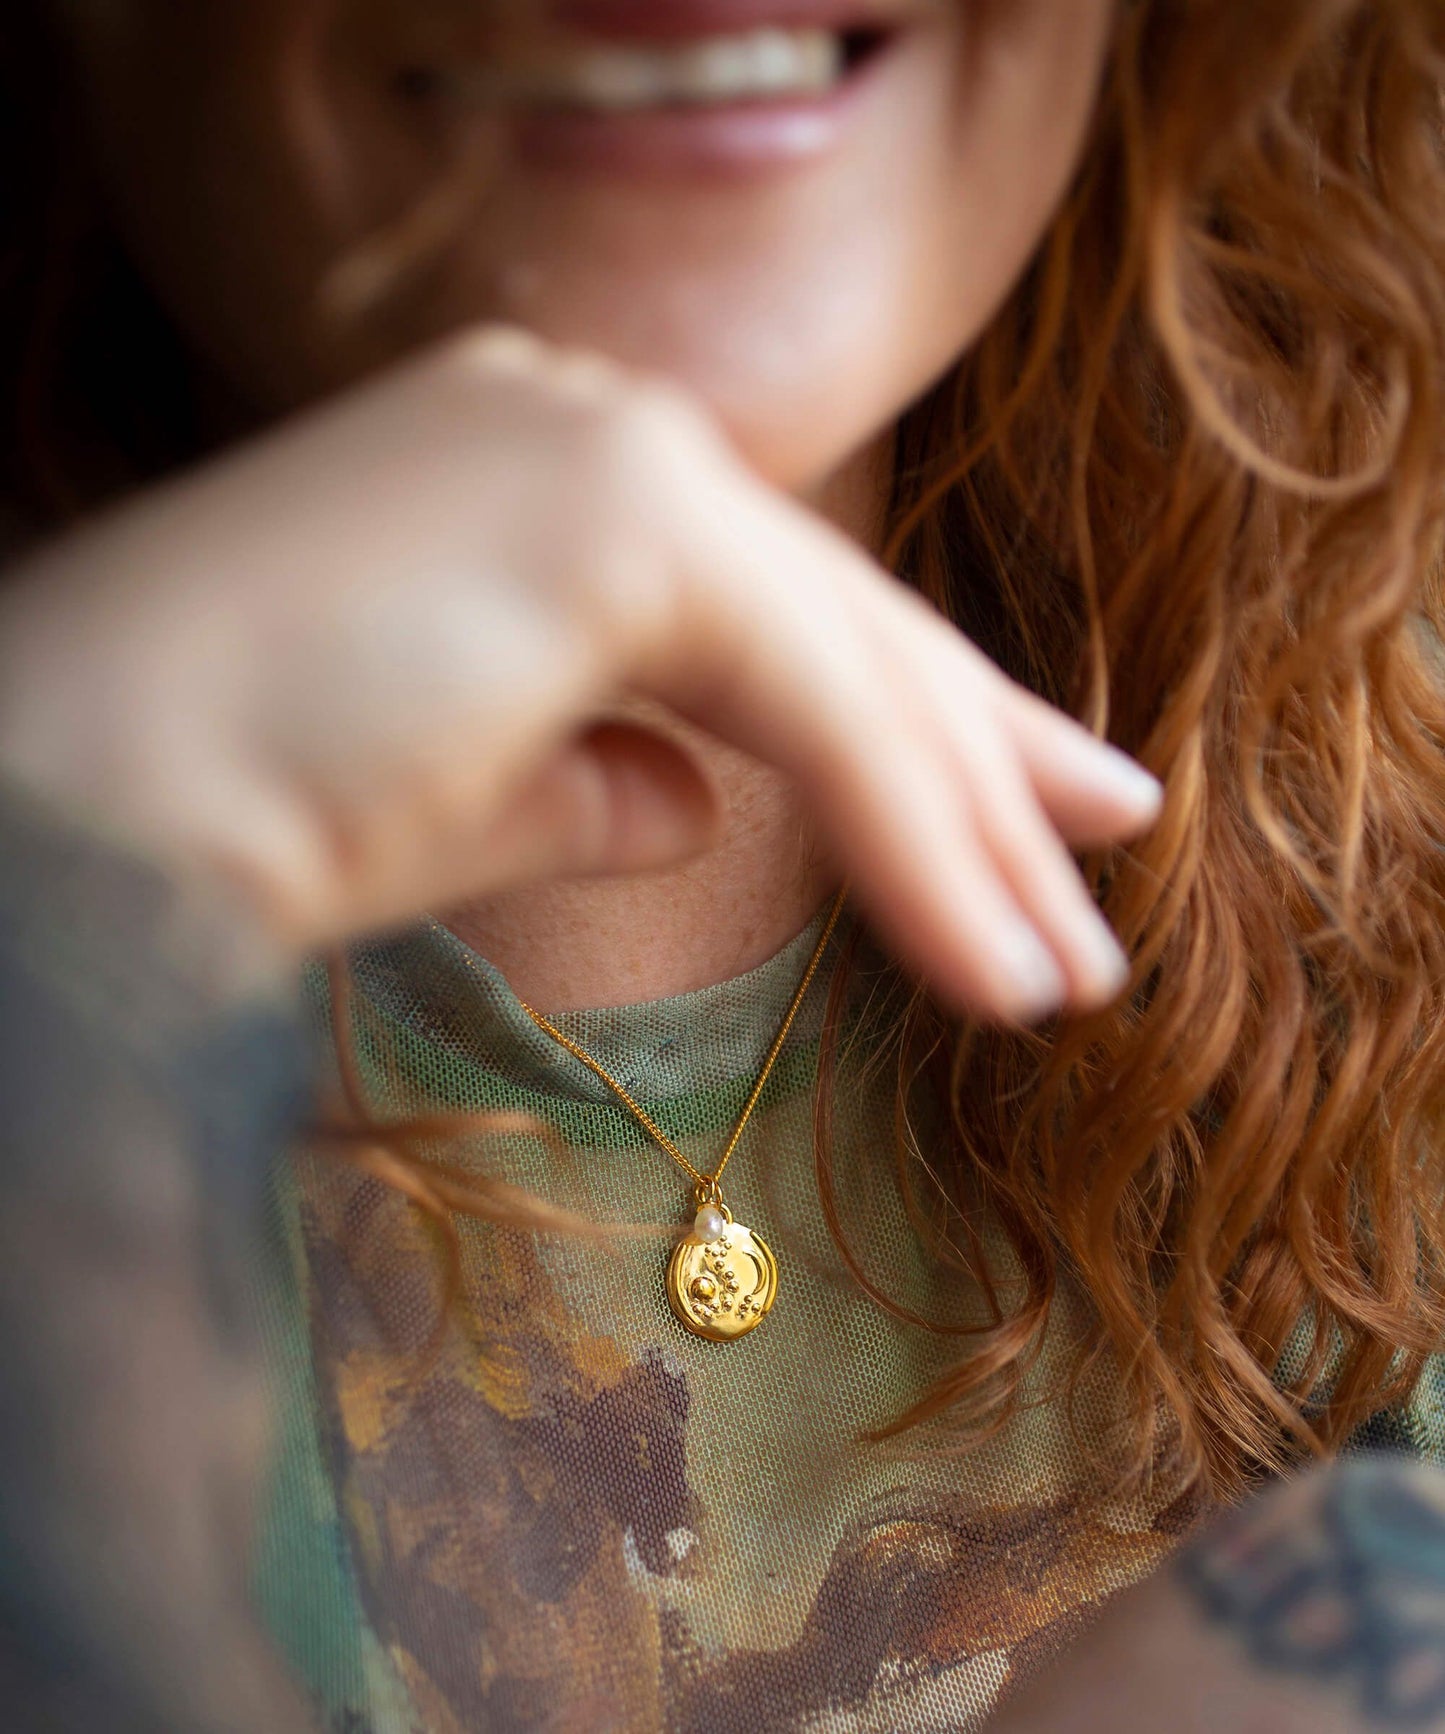 Pisces gold zodiac necklace